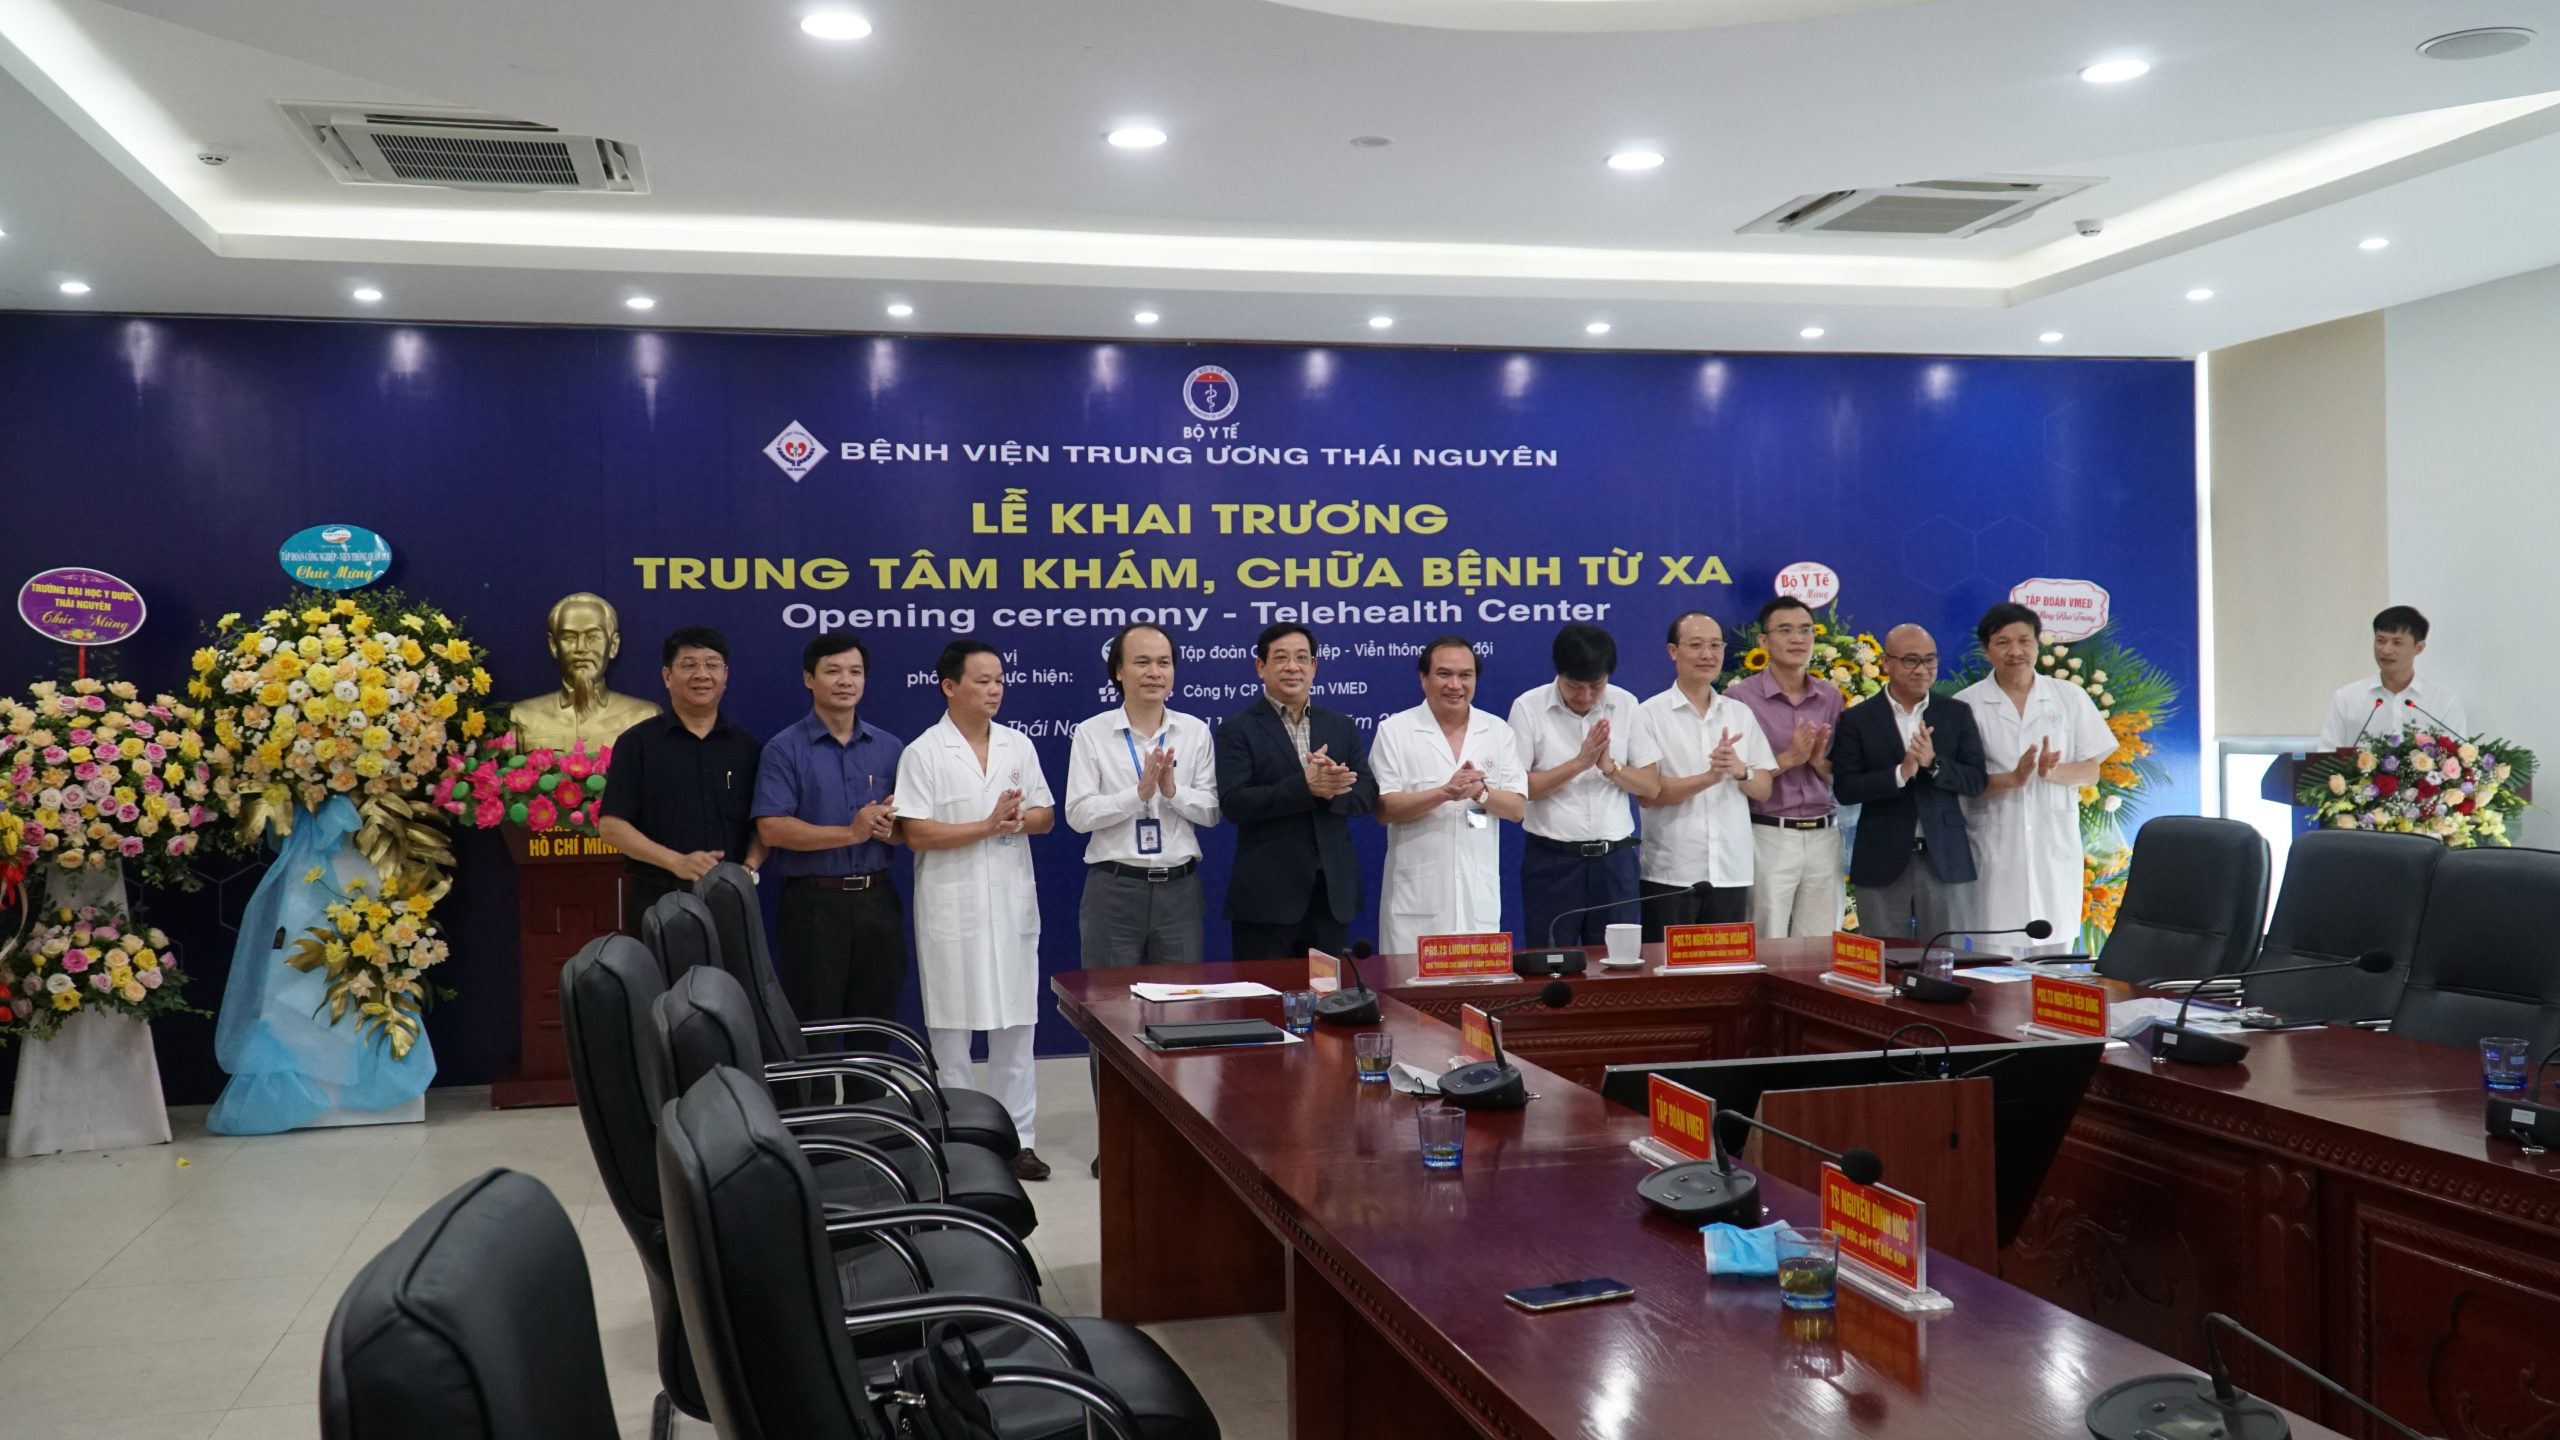 Bệnh viện Trung ương Thái Nguyên chính thức khai trương và đưa vào sử dụng Trung tâm khám chữa bệnh từ xa với sự đồng hành của VMED Group